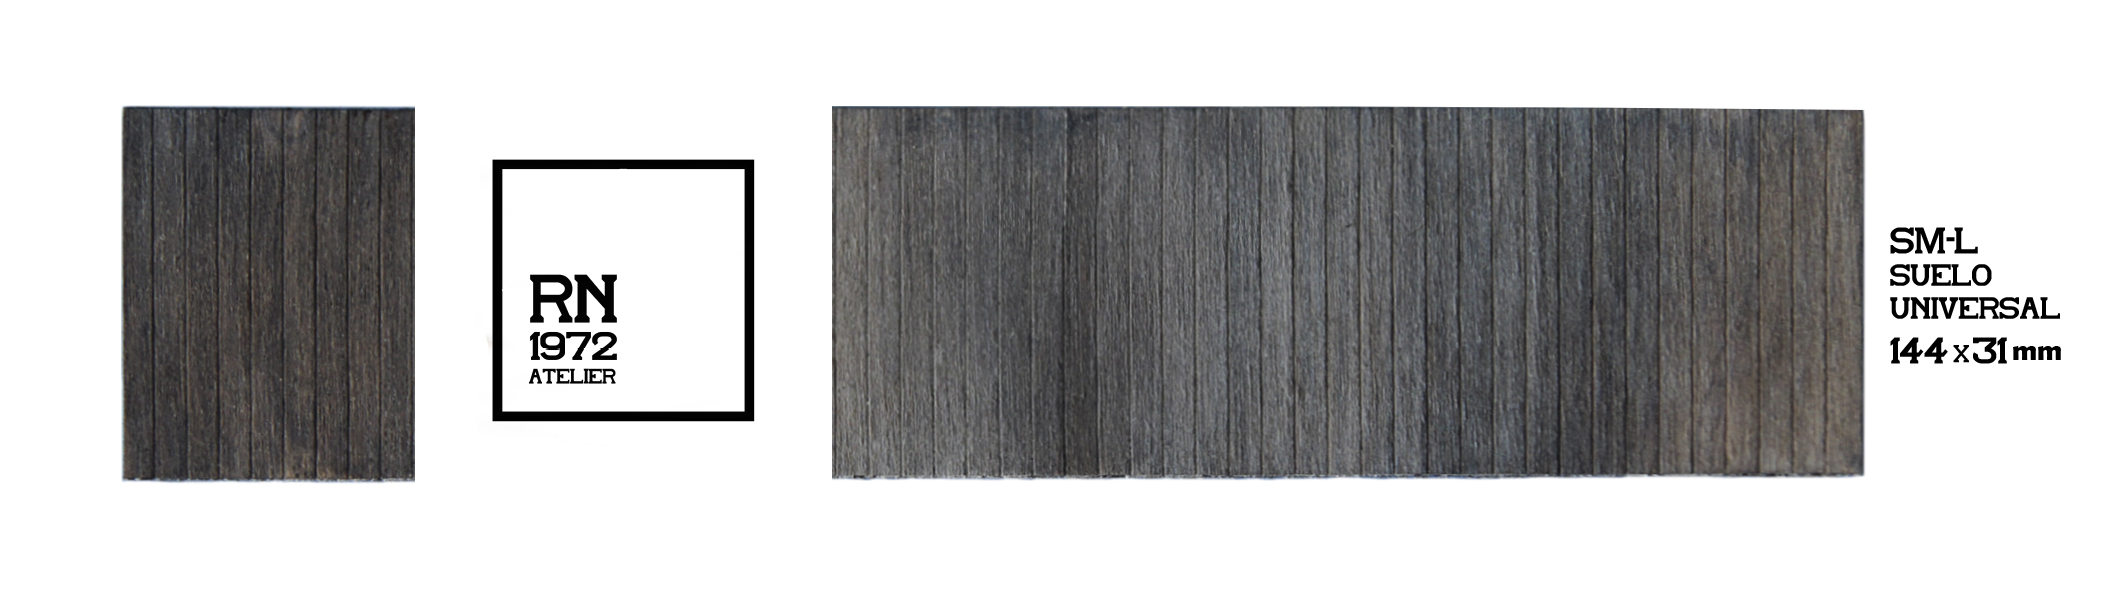 Mabar – Suelo de madera Real y tratada para suelos de vagones 2, Escala H0, Ref: SM-L.